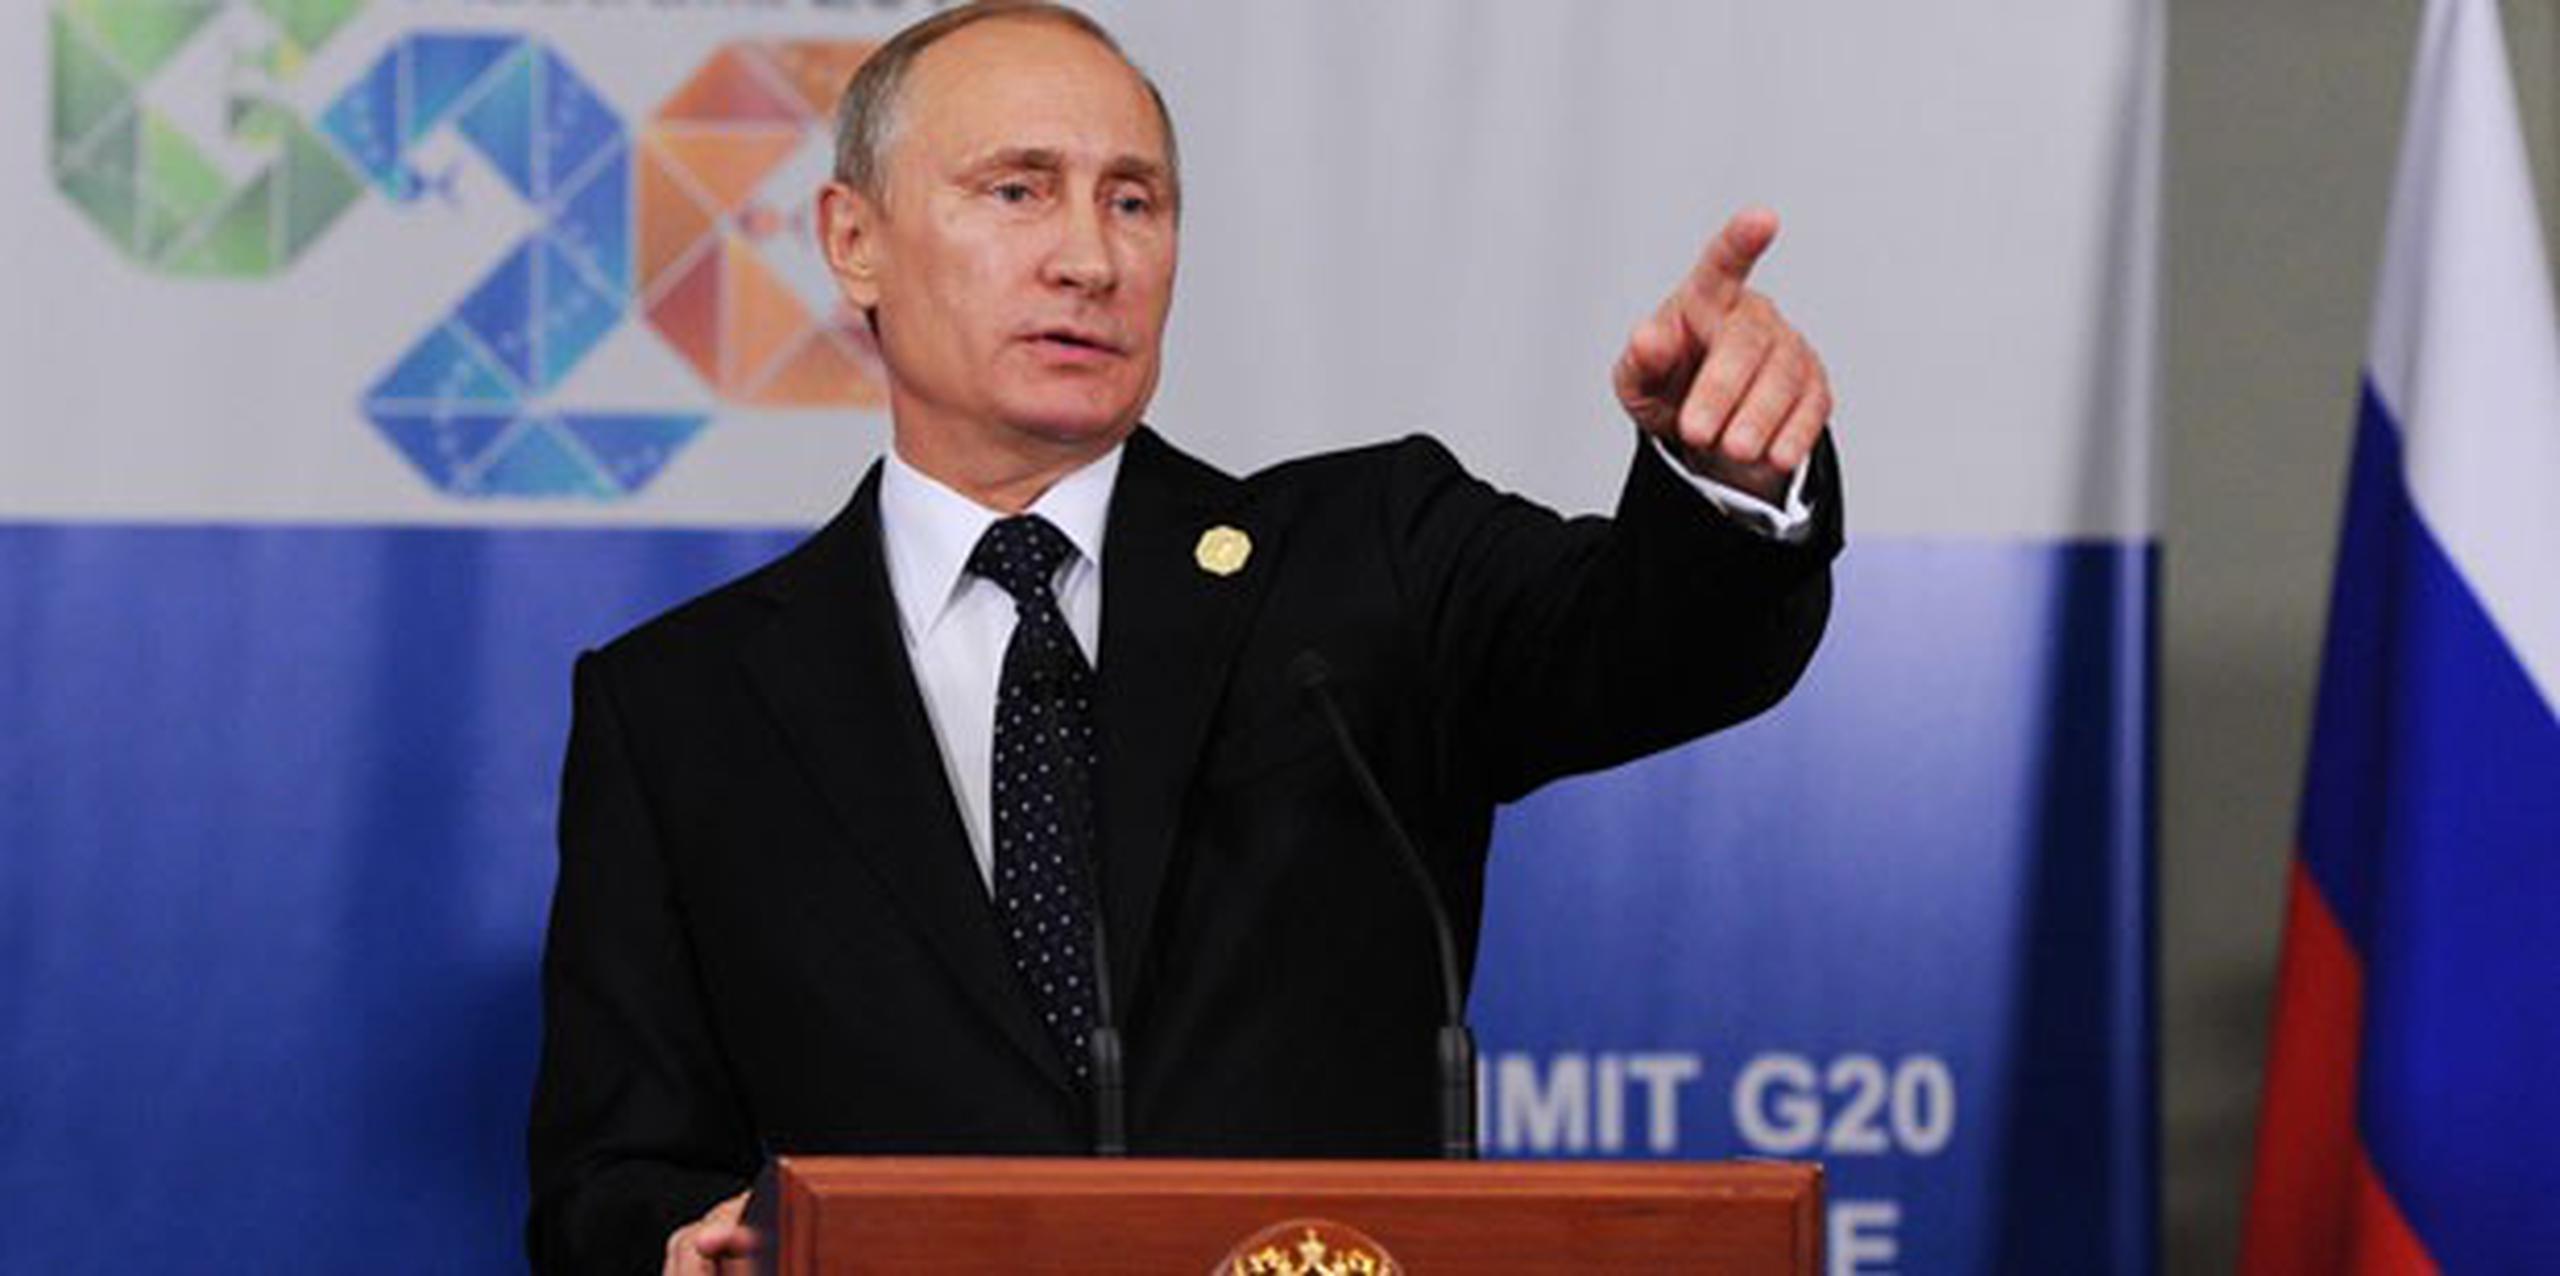 Mientras el presidente ruso, Vladímir Putin, abandonaba Brisbane antes de la clausura del G20, Estados Unidos se reunía con sus socios europeos para analizar la situación en Ucrania. (AP Photo)
